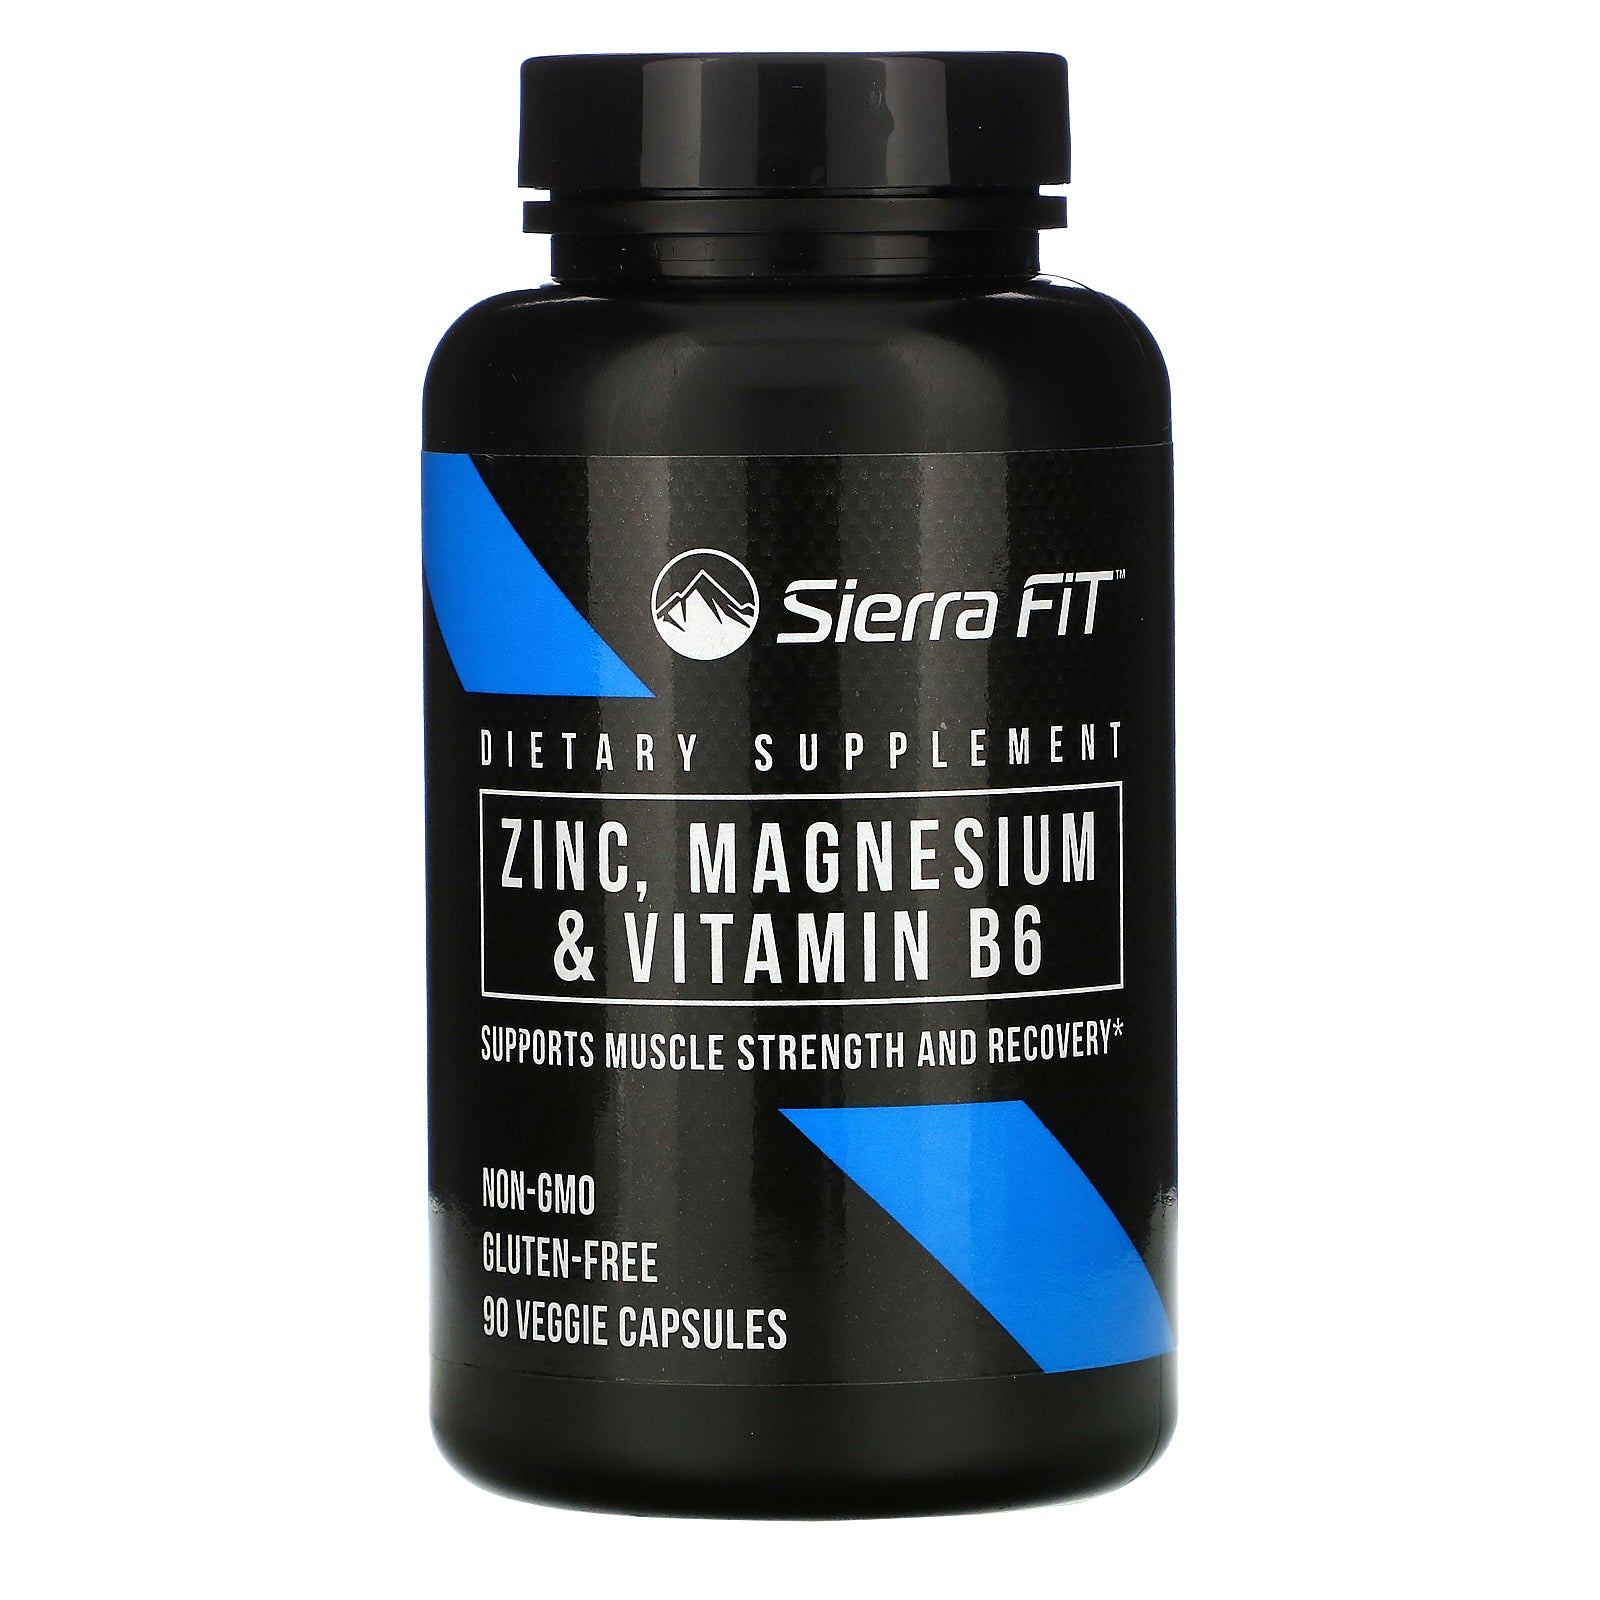 Sierra Fit, Zinc, Magnesium & Vitamin B6, 90 Veggie Capsules